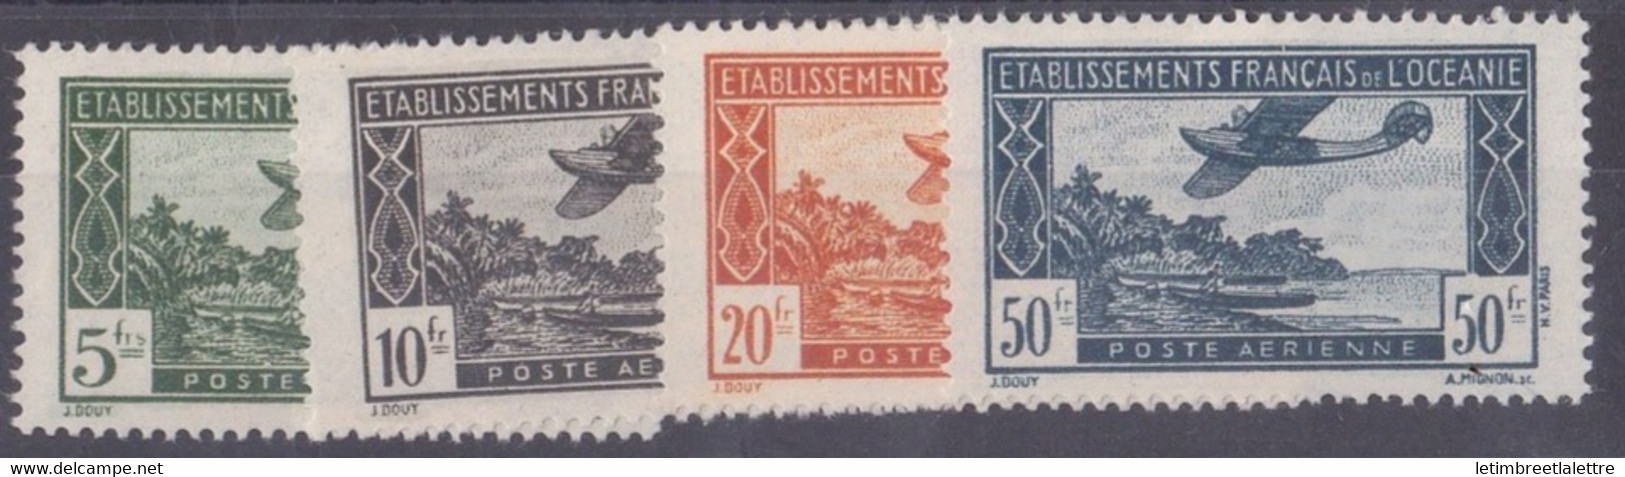 Océanie - Poste Aérienne - YT N° 14 à 17 ** - Neuf Sans Charnière - 1944 - Luftpost